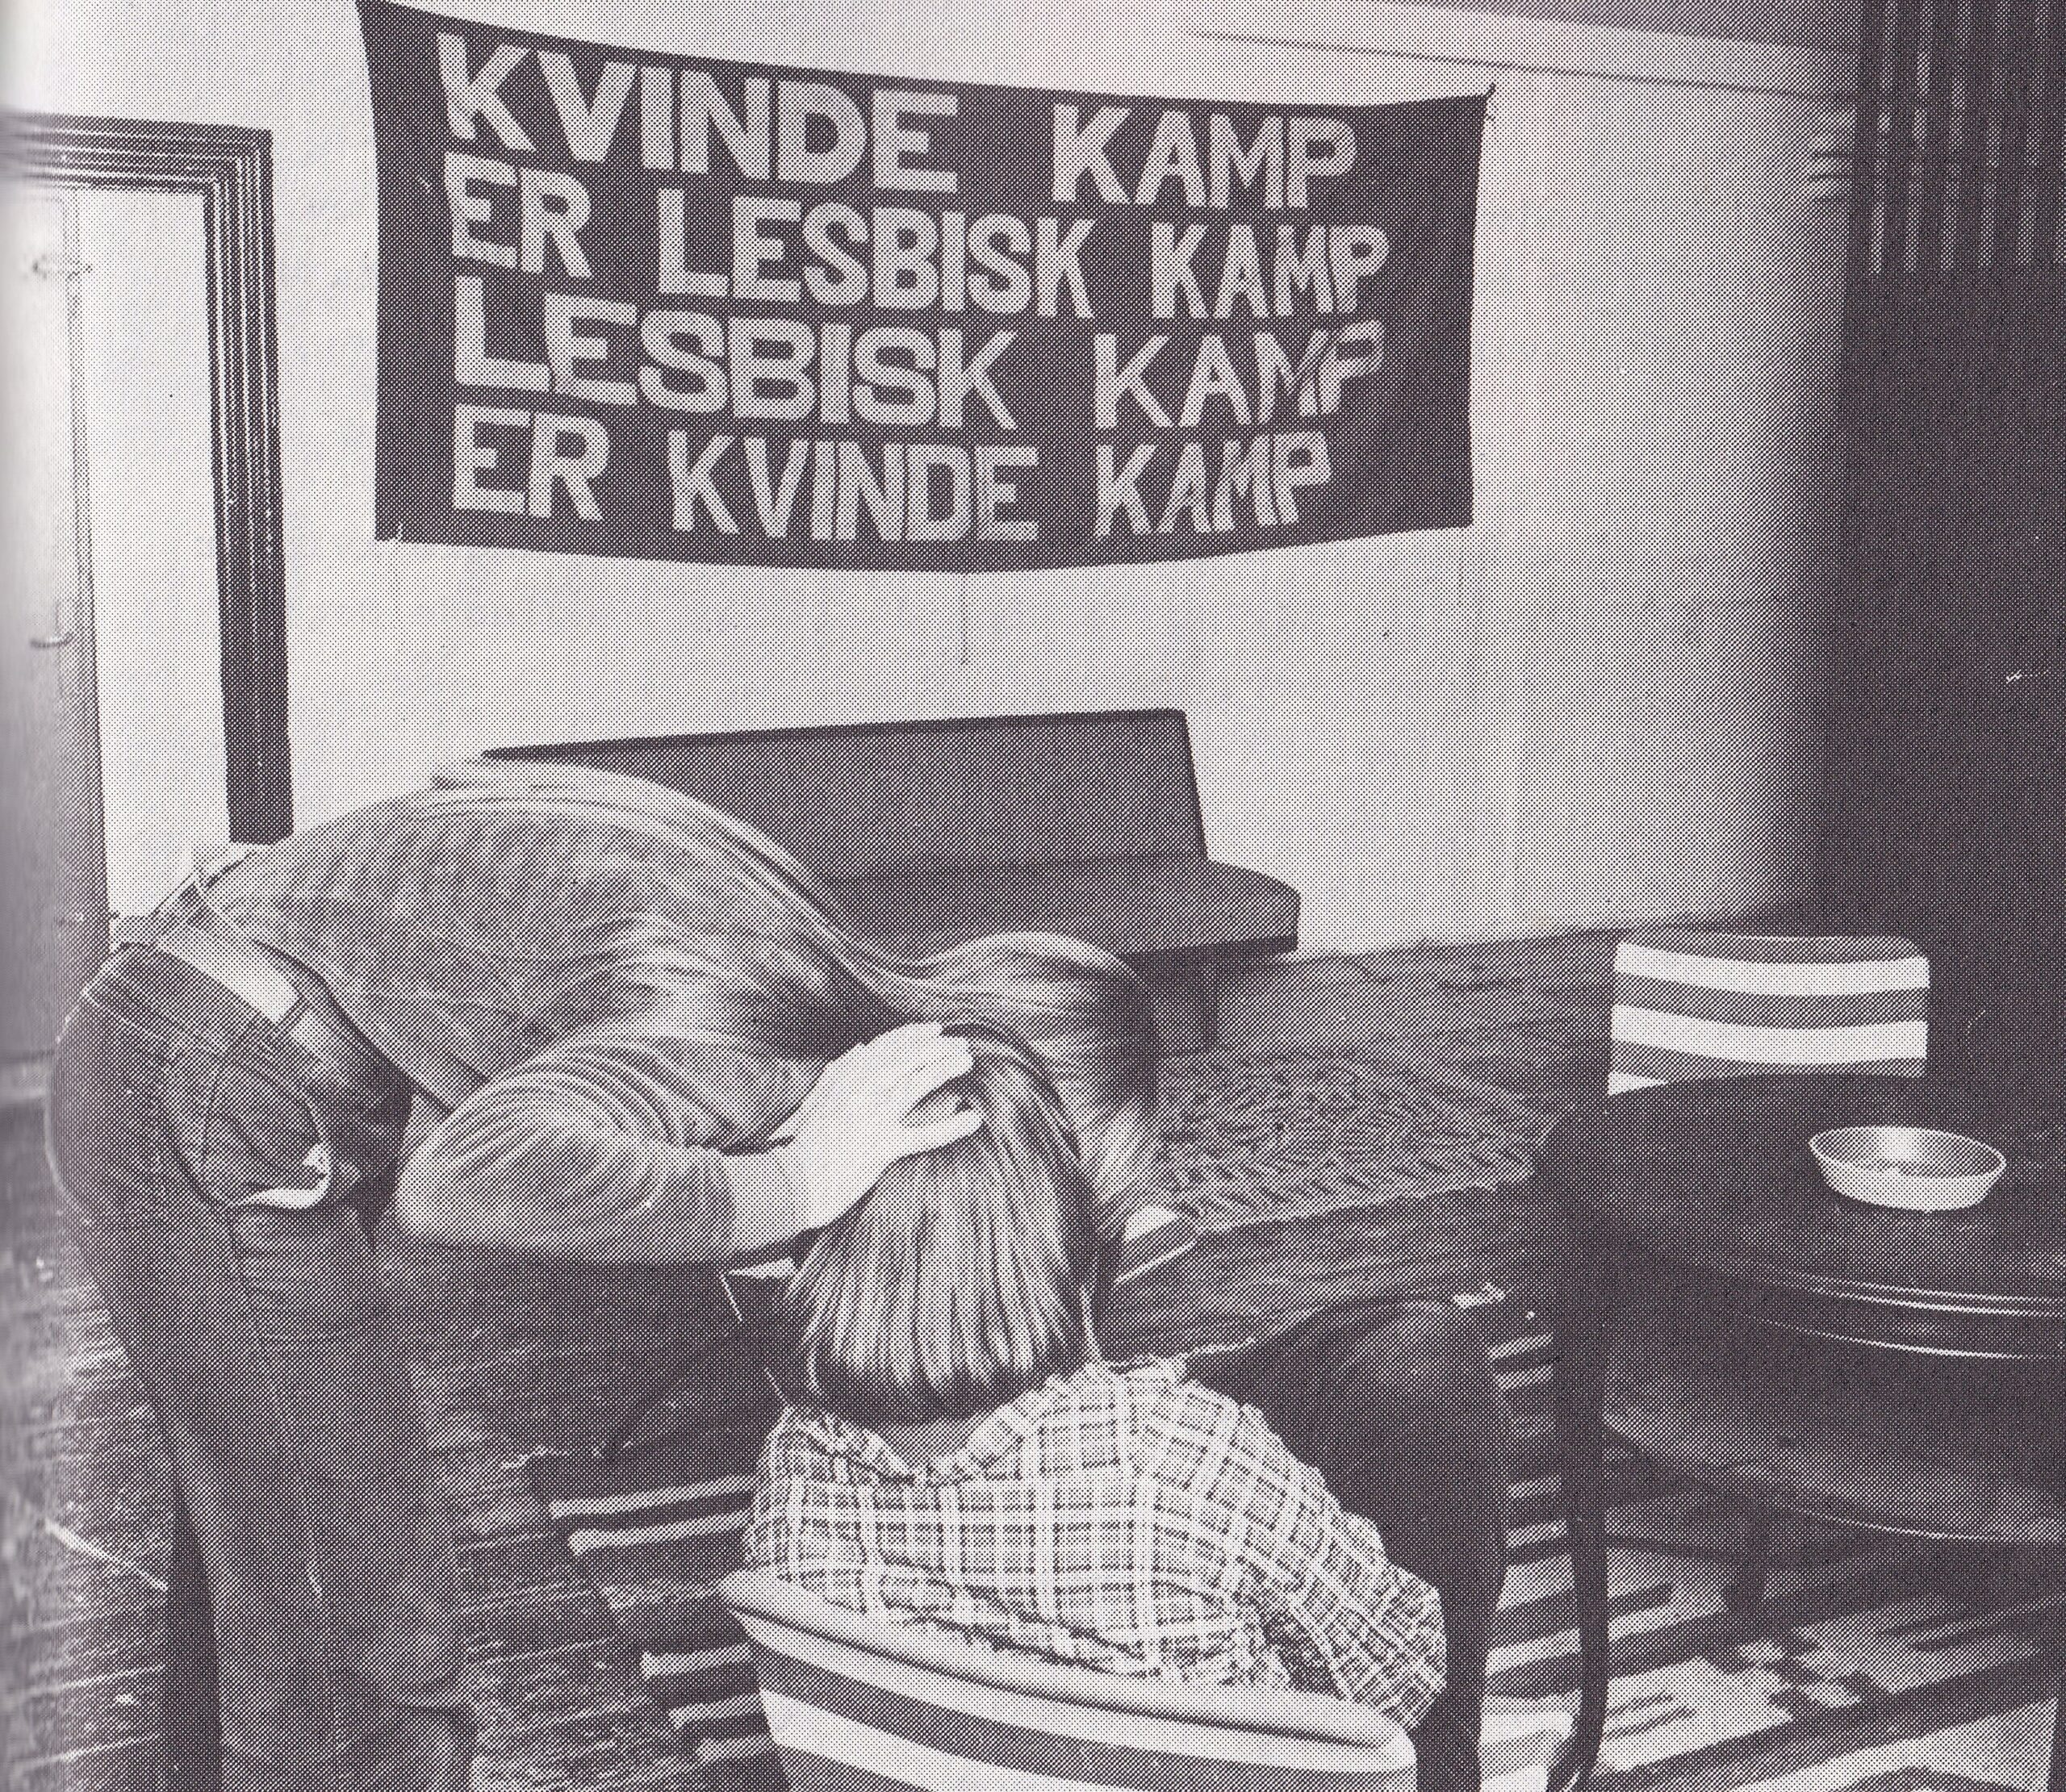 Billede fra 70'erne fra en stue med to mennesker, der sidder under et banner, hvorpå der står et lesbisk feministisk slogan "kvindekamp er lesbisk kamp, lesbisk kamp er kvindekamp